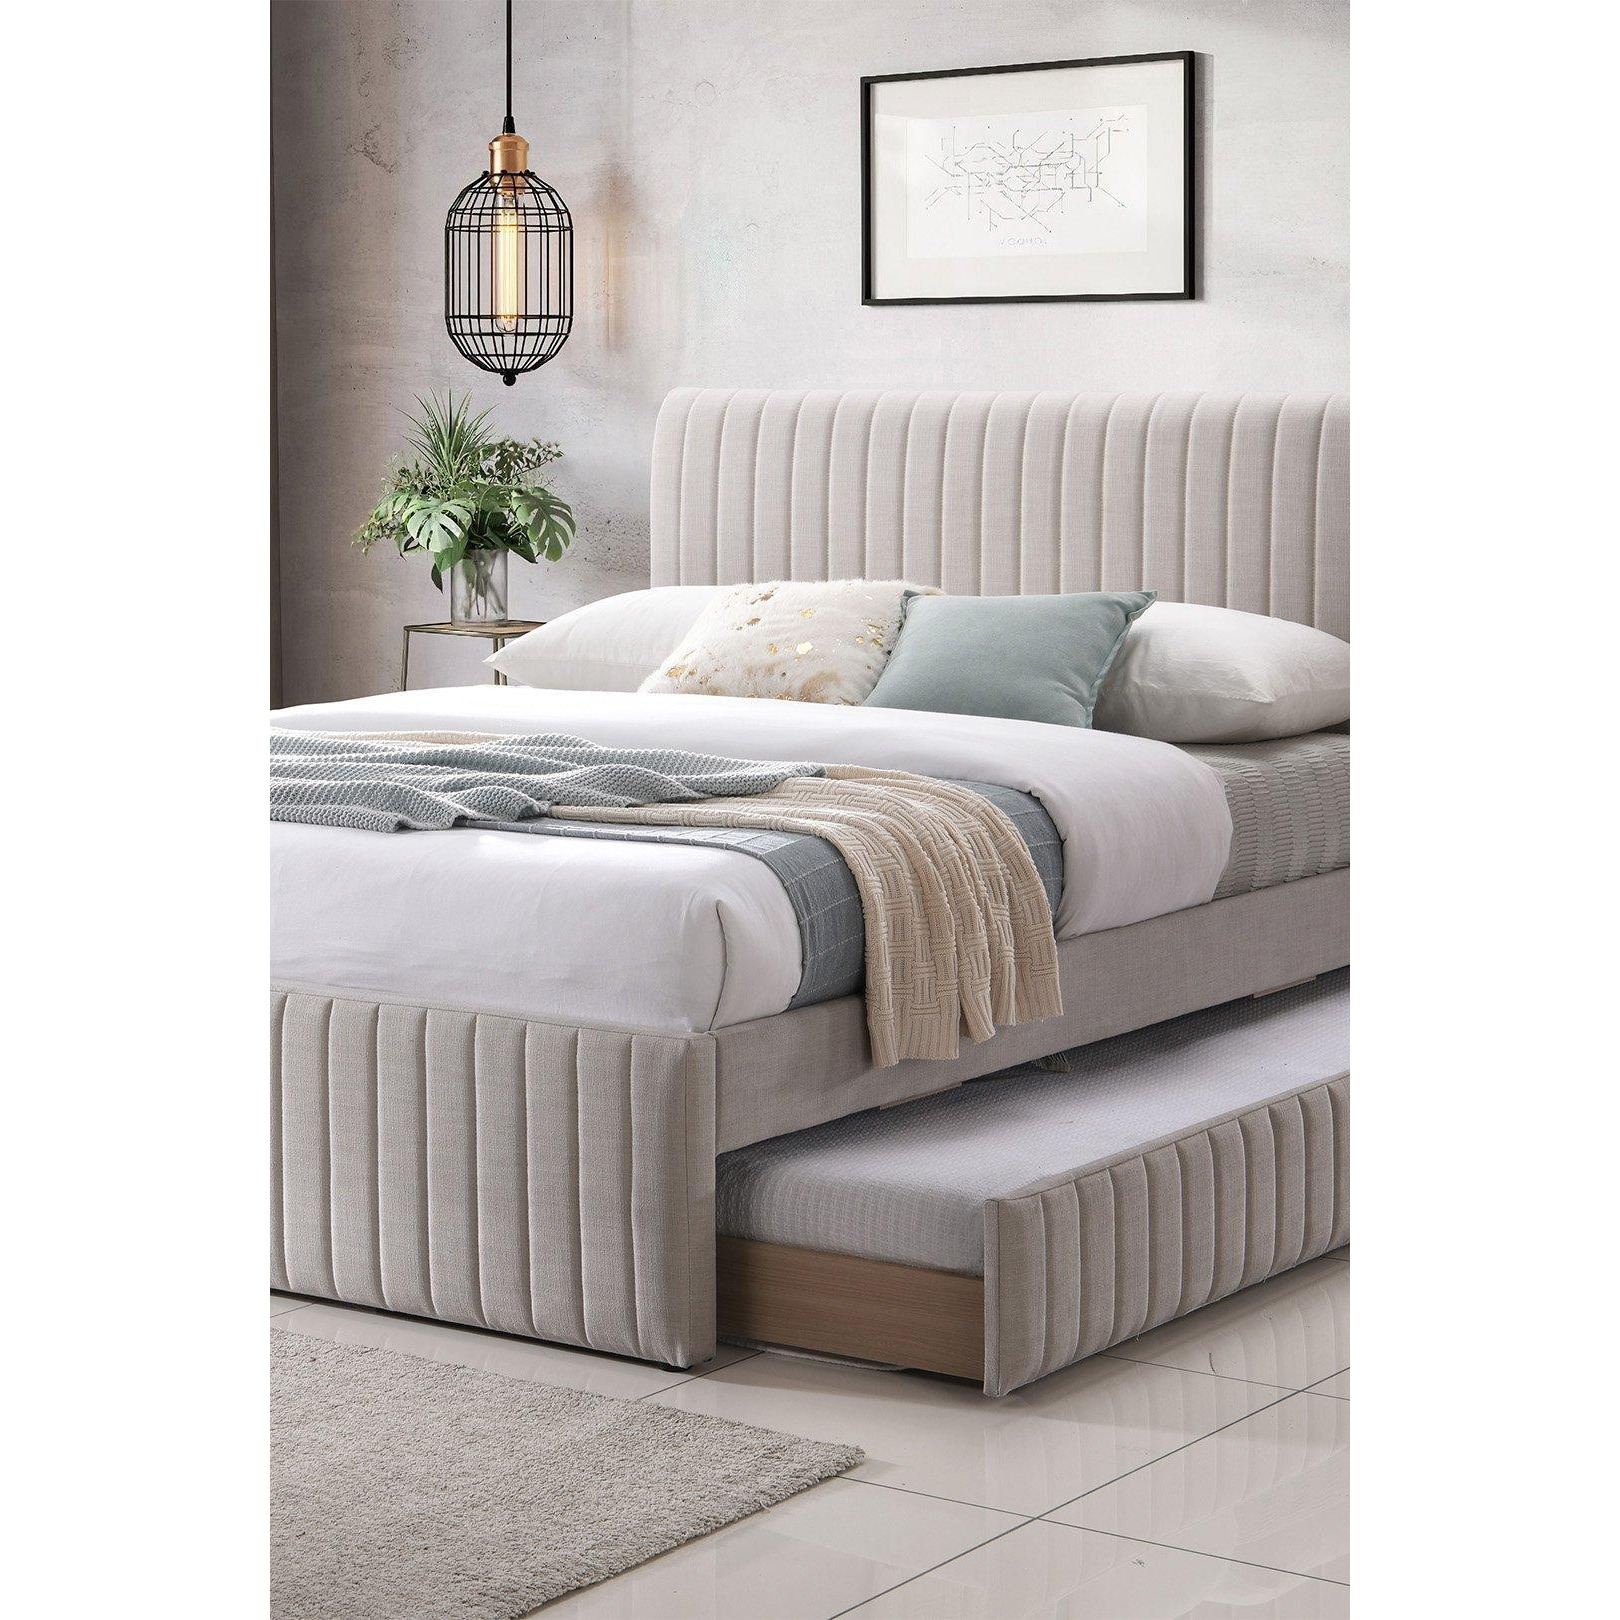 Bexley Natural Oat Upholstered -  Bed Frame With Underbed Frame - image 1